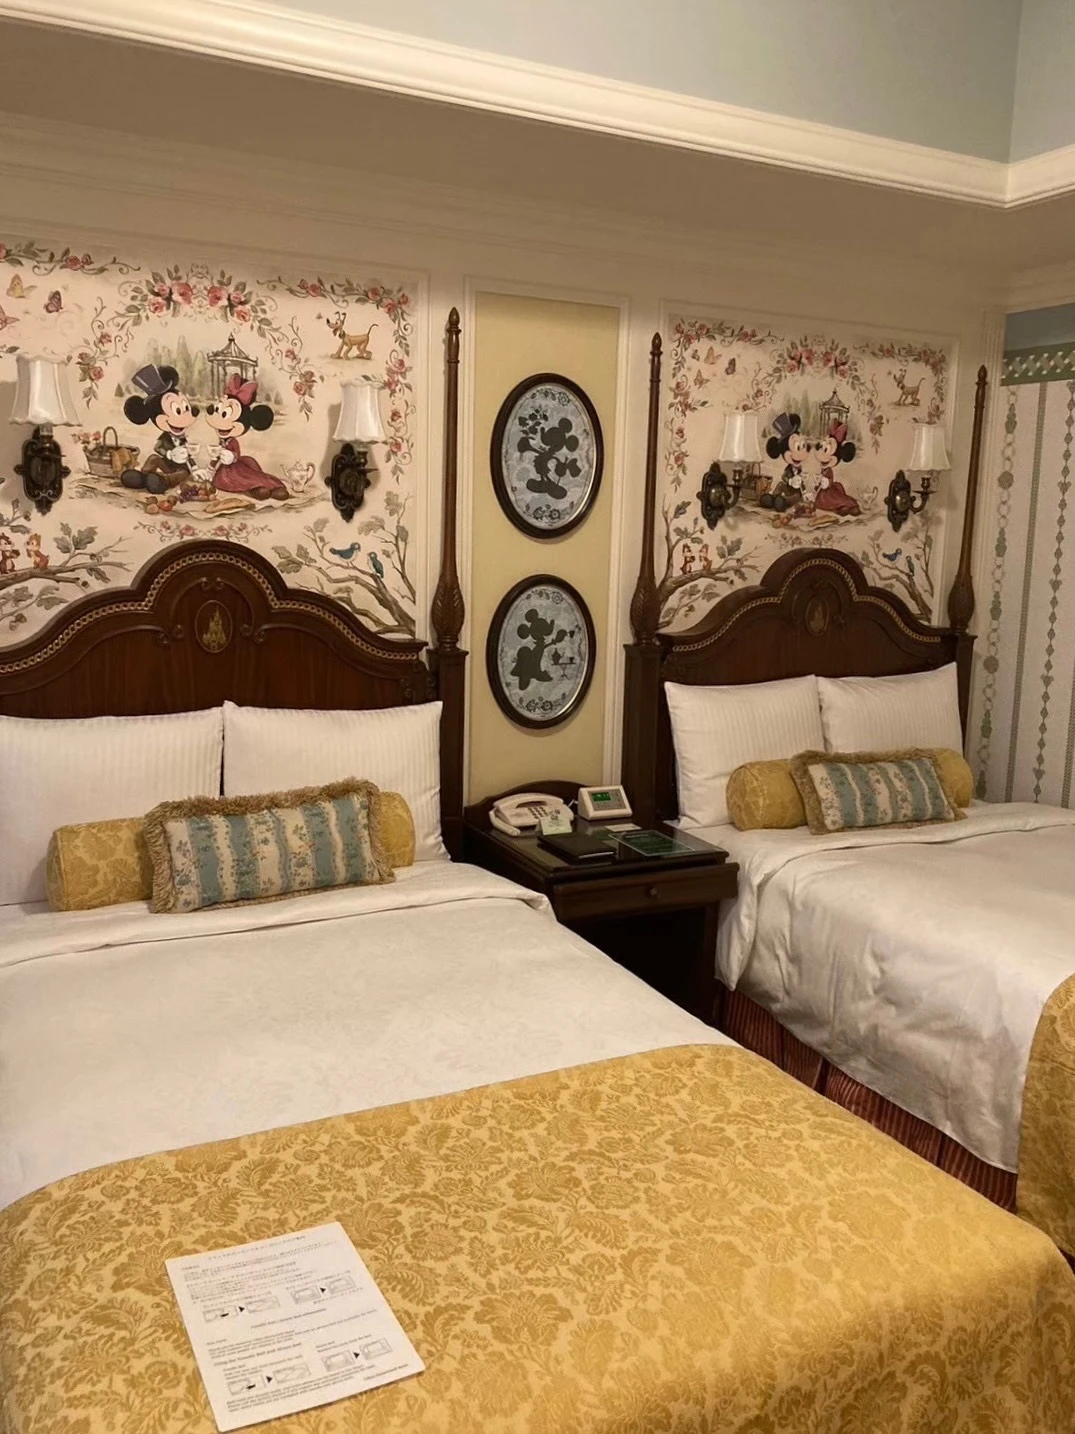 ディズニーランドホテルの客室のベッド